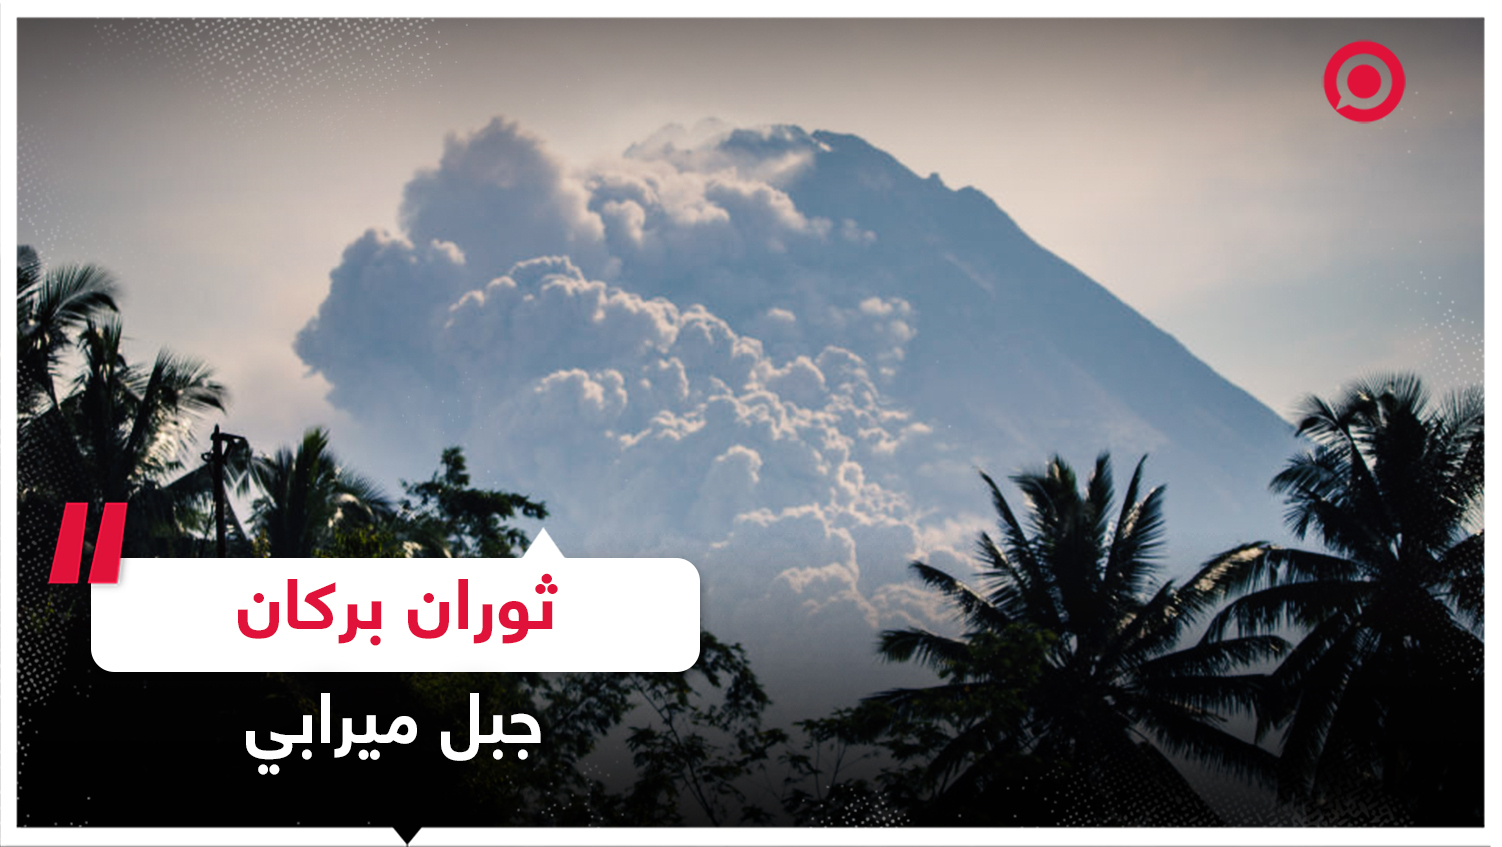 ثوران بركان جبل ميرابي بجزيرة جاوة في إندونيسيا